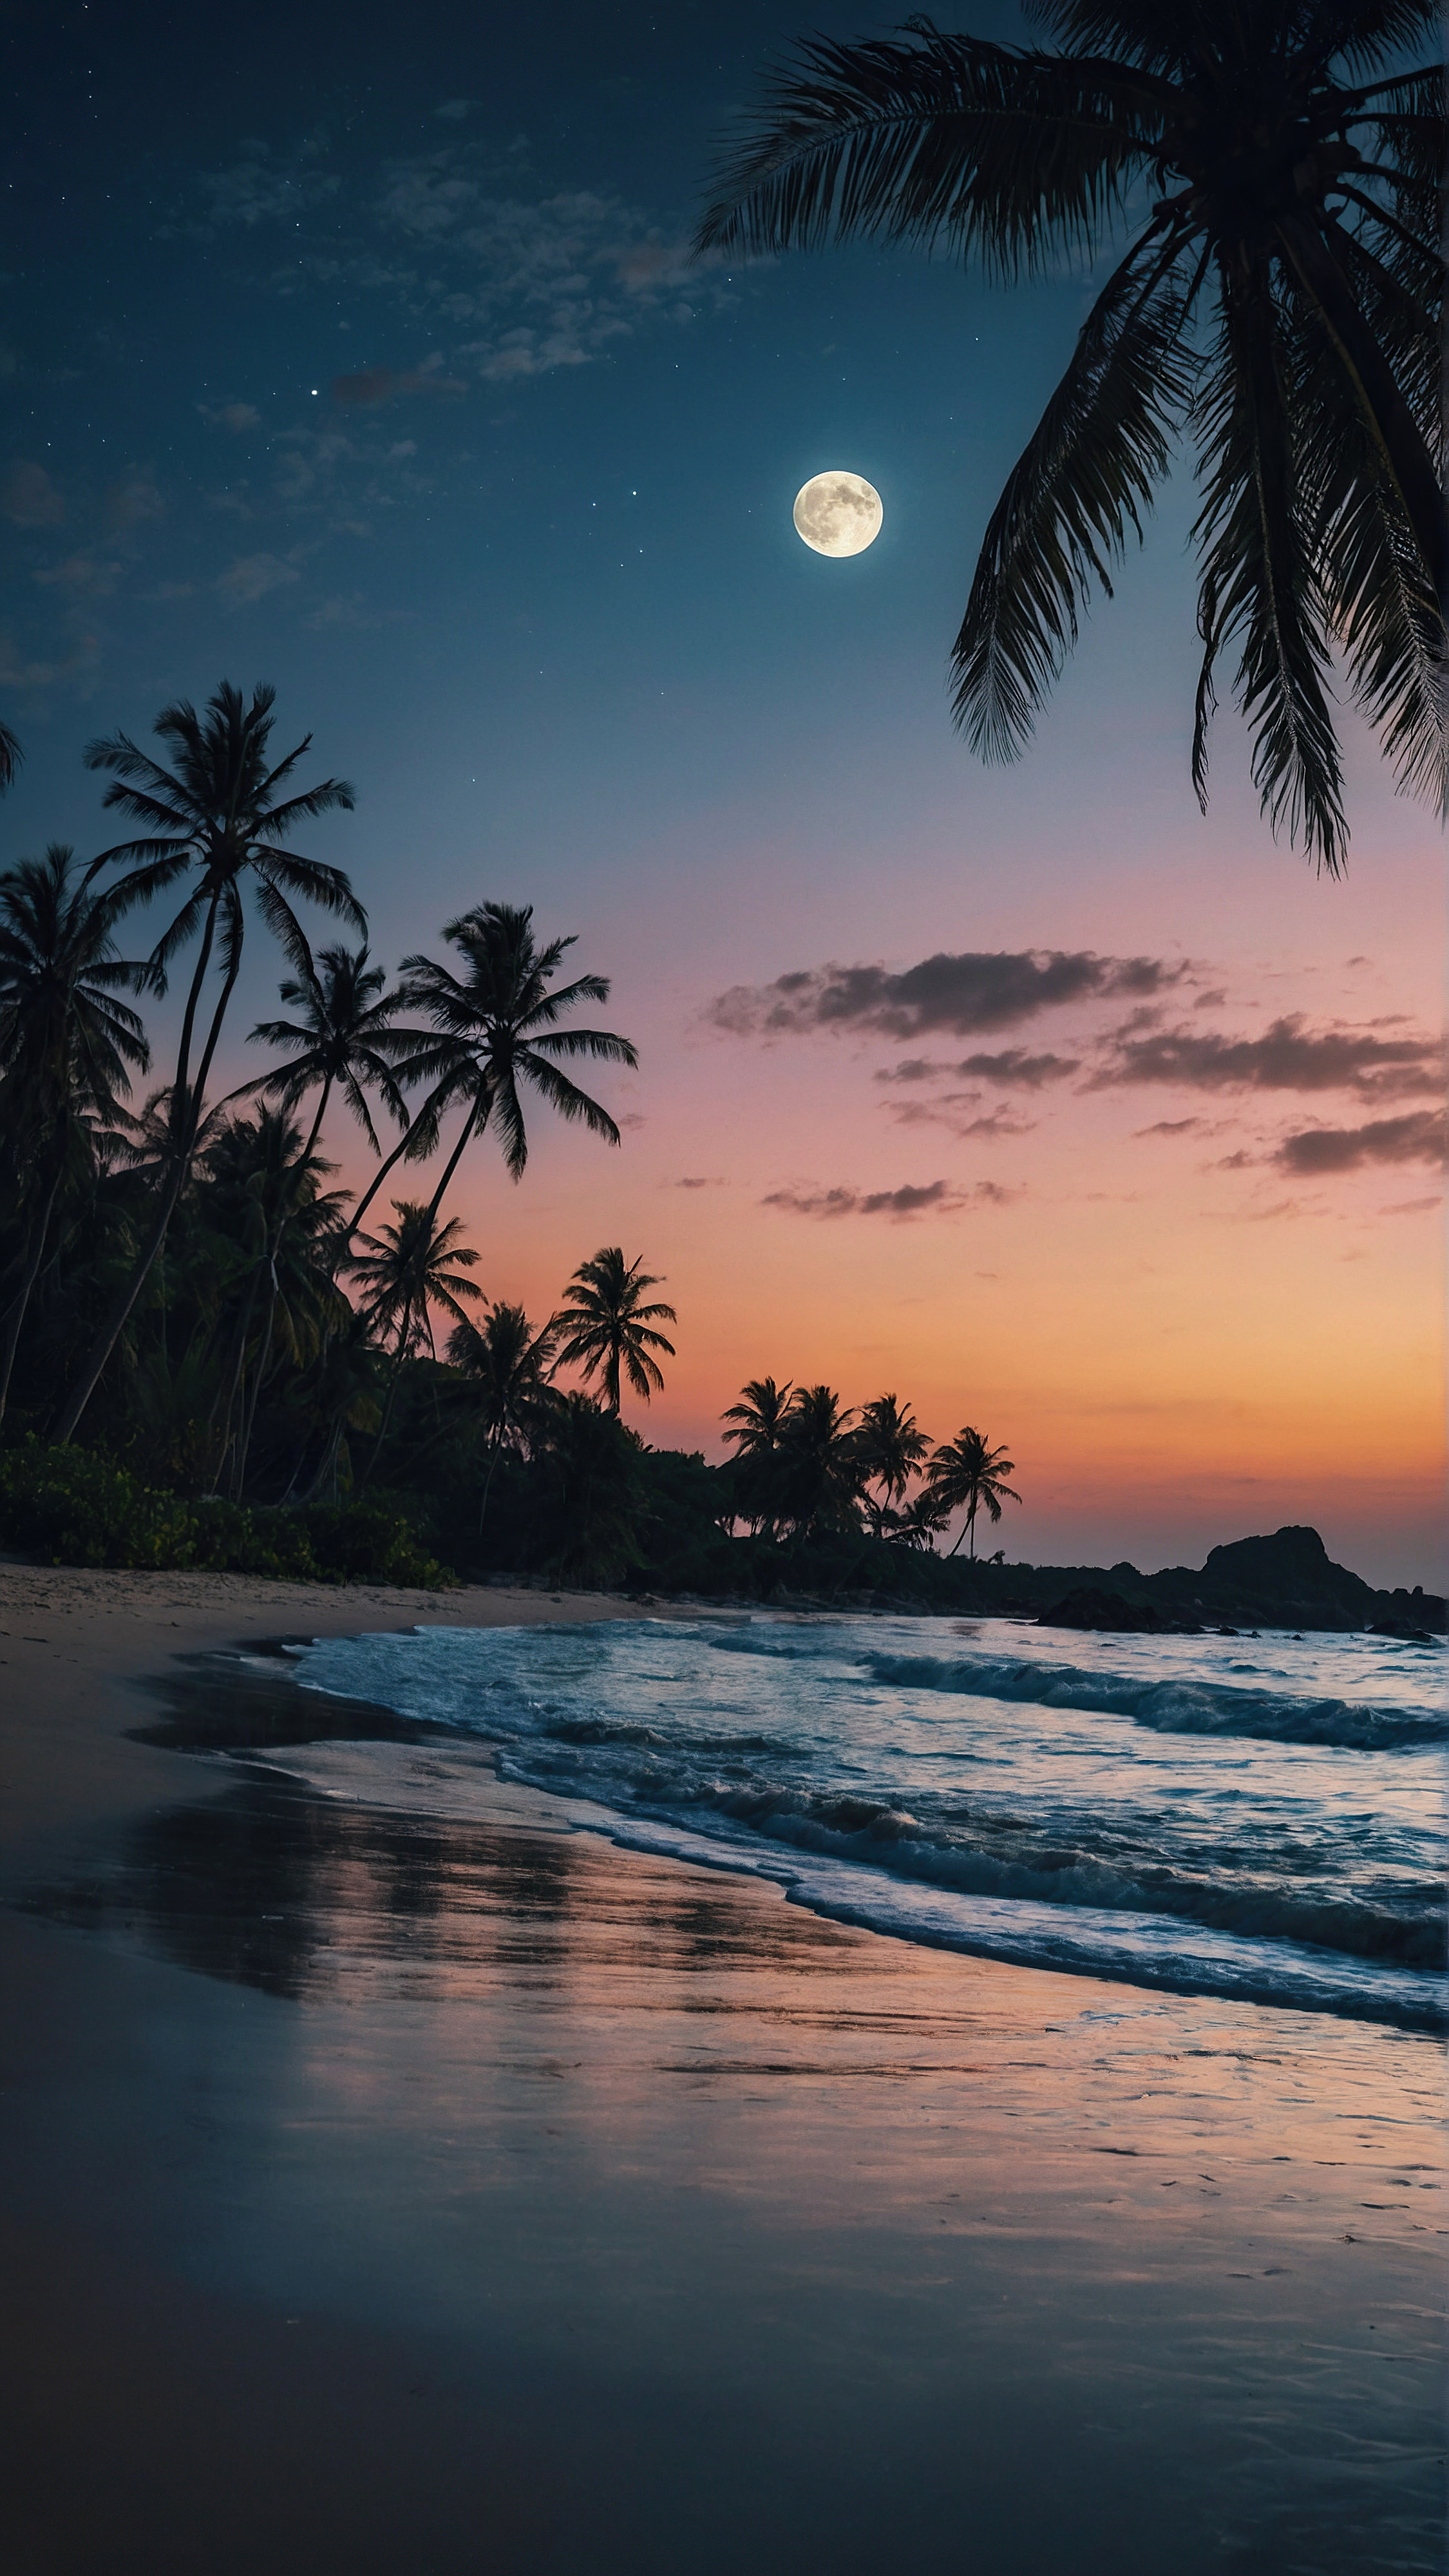 Découvrez le charme tropical de notre fond d'écran pour iPhone en 4K, où une grande lune illumine une scène de plage envoûtante au crépuscule, se reflétant sur les vagues qui clapotent doucement et mettant en valeur les silhouettes des palmiers dans ce paysage serein. 